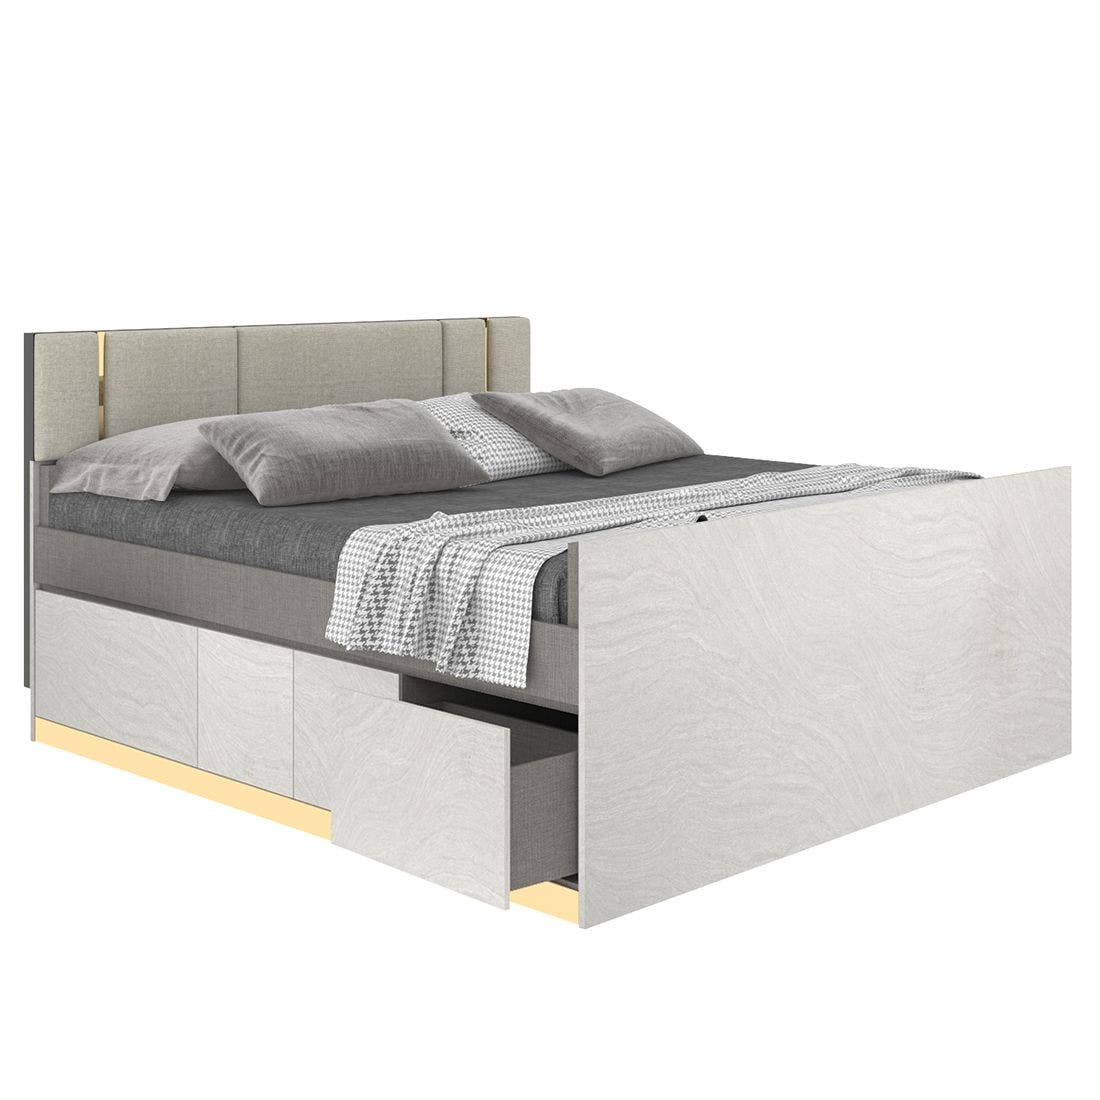 19203290-blisz-furniture-bedroom-furniture-beds-06